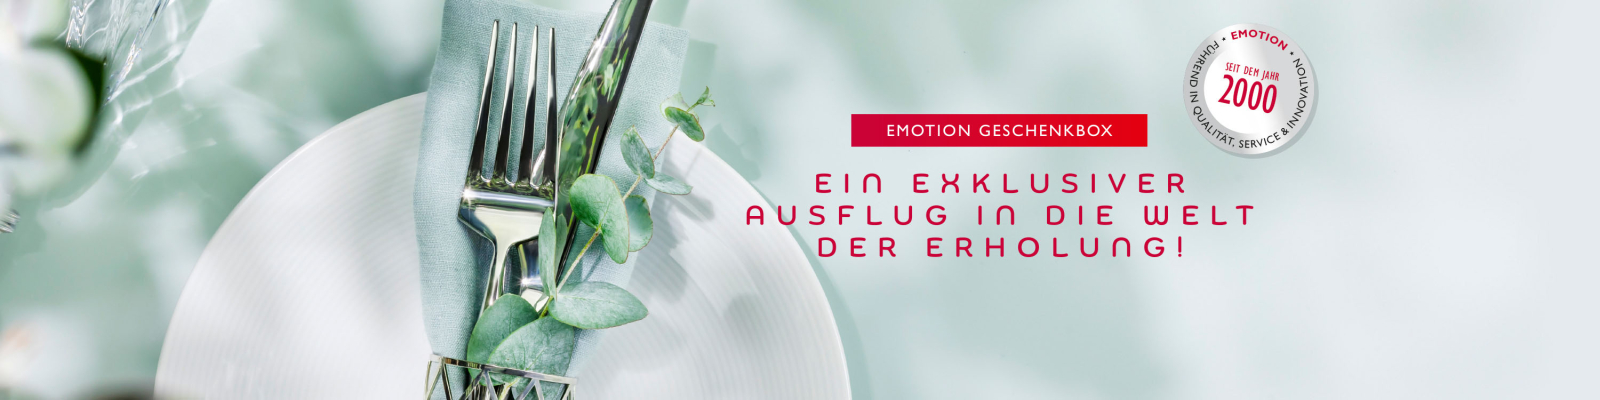 Banner EMOTION Geschenkbox3